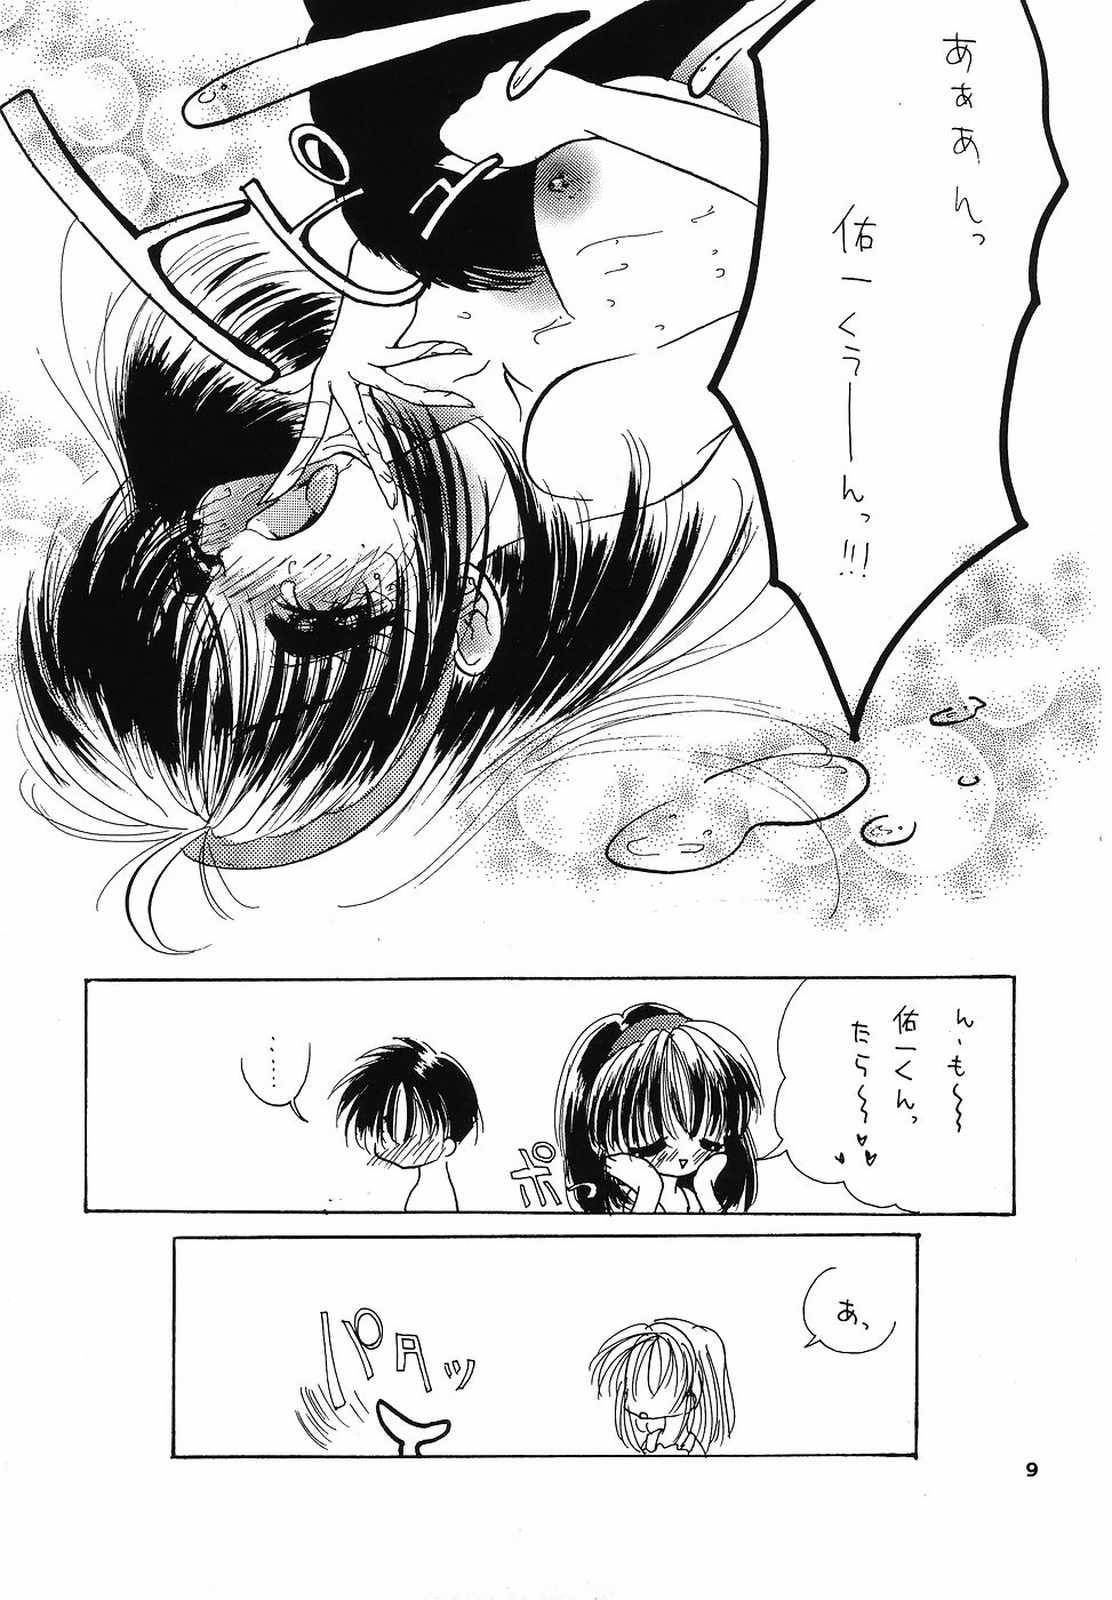 Upskirt eroero Vol.4 - Sakura taisen Kanon Stepbro - Page 8